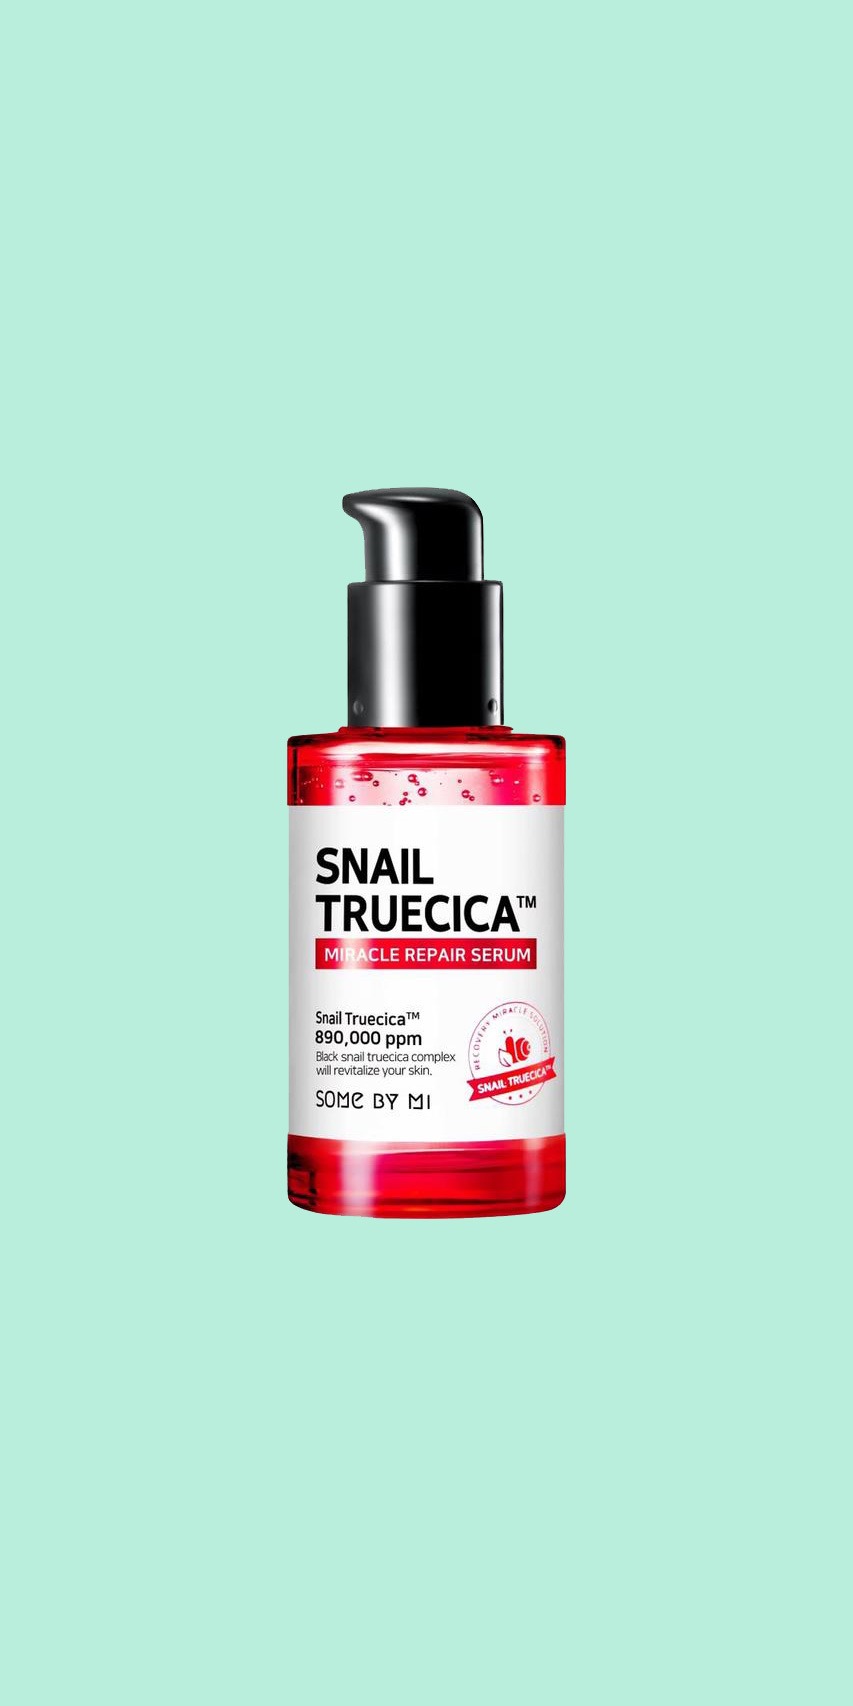 somebymi snail truecica miracle repair serum